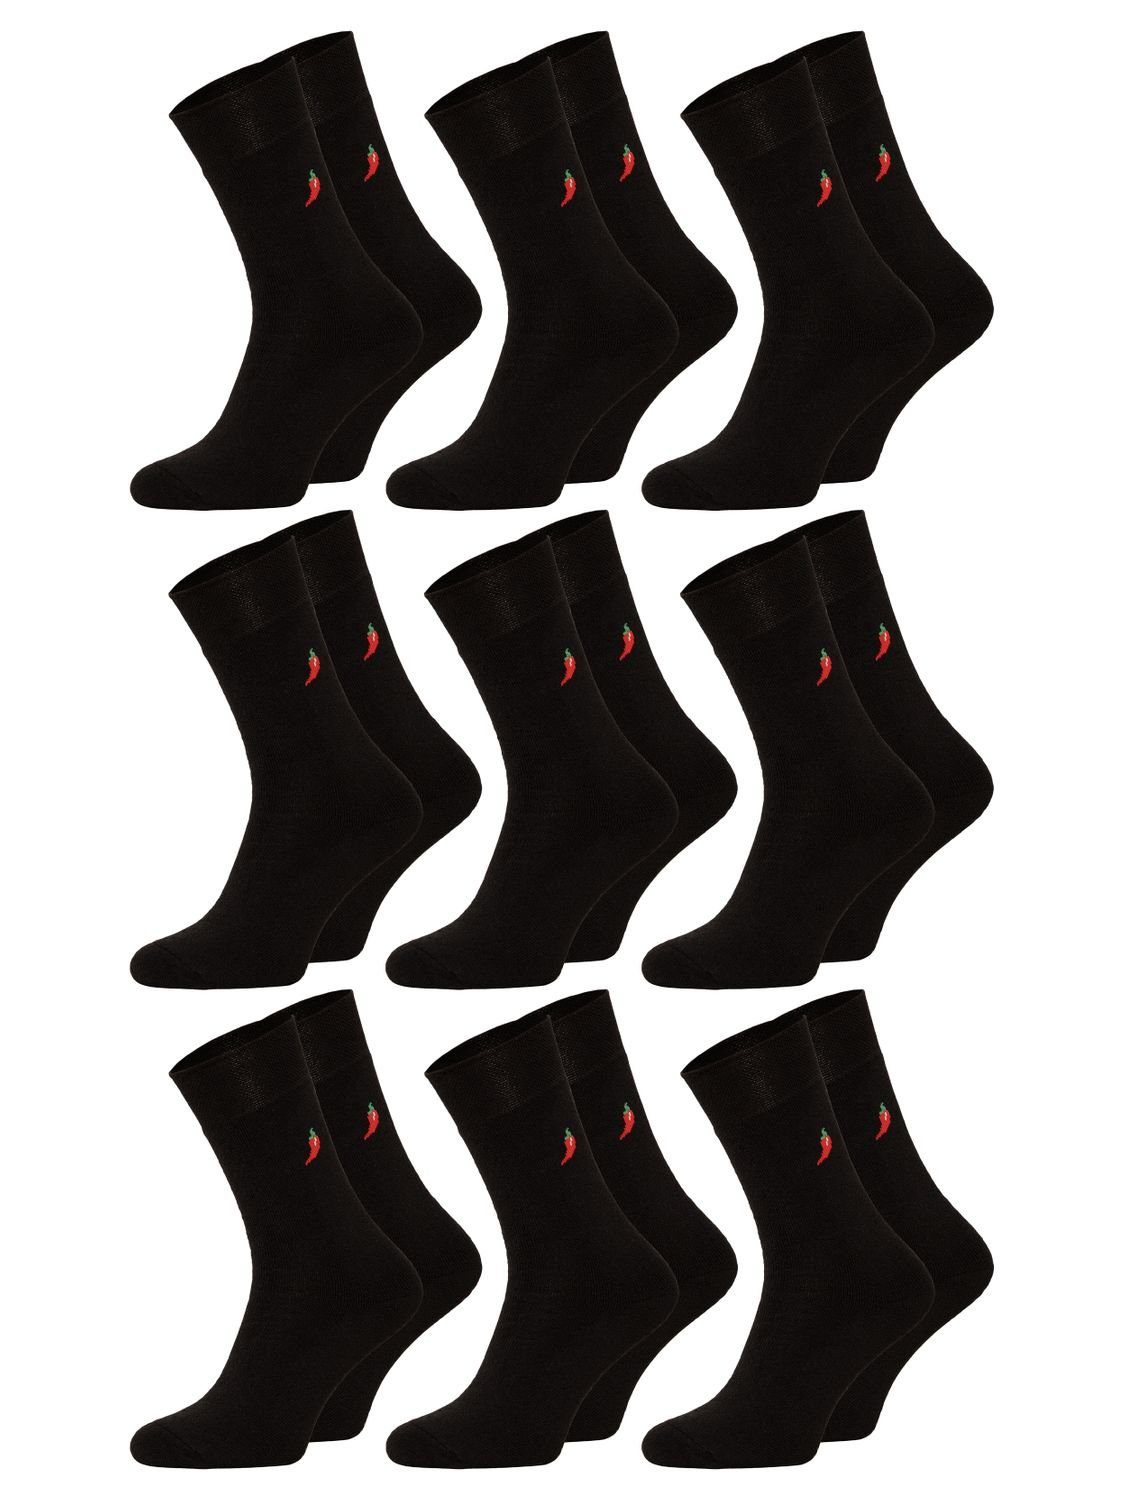 Chili Lifestyle Strümpfe Thermo Chili Socken, 9 Paar, für Herren und Damen, Wintersocken, Ski